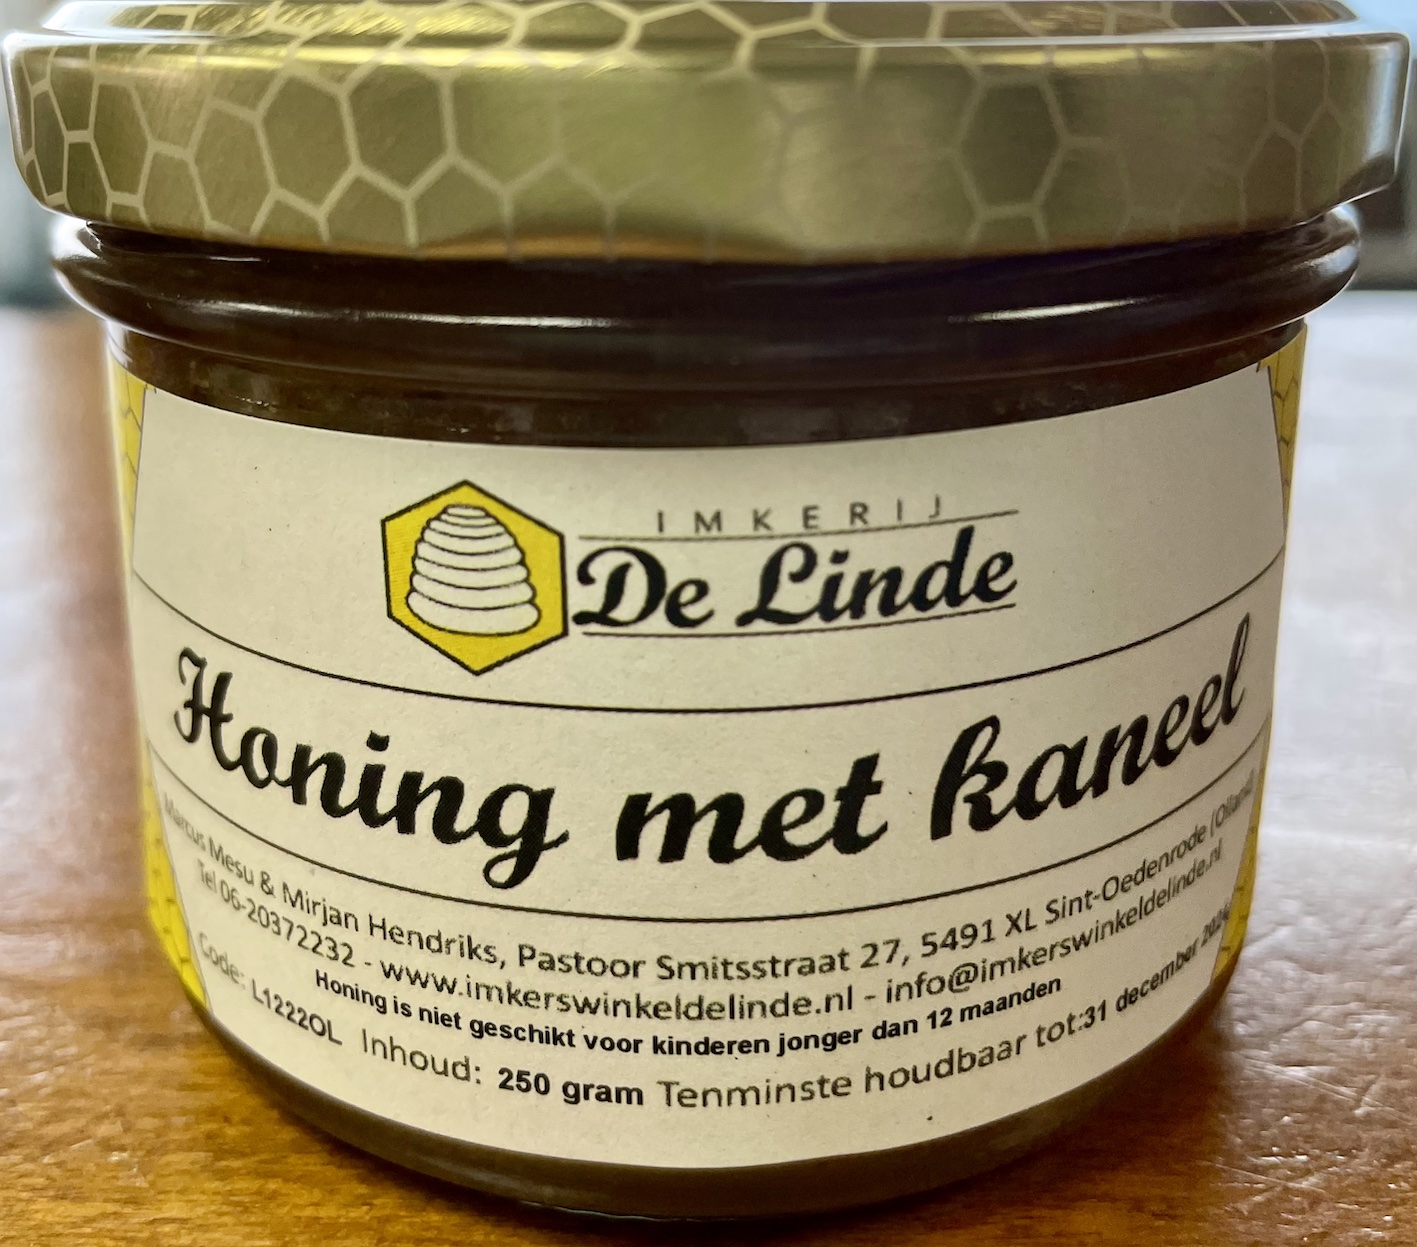 Honing met kaneel 250 gram kopen bij Imkerij De Linde